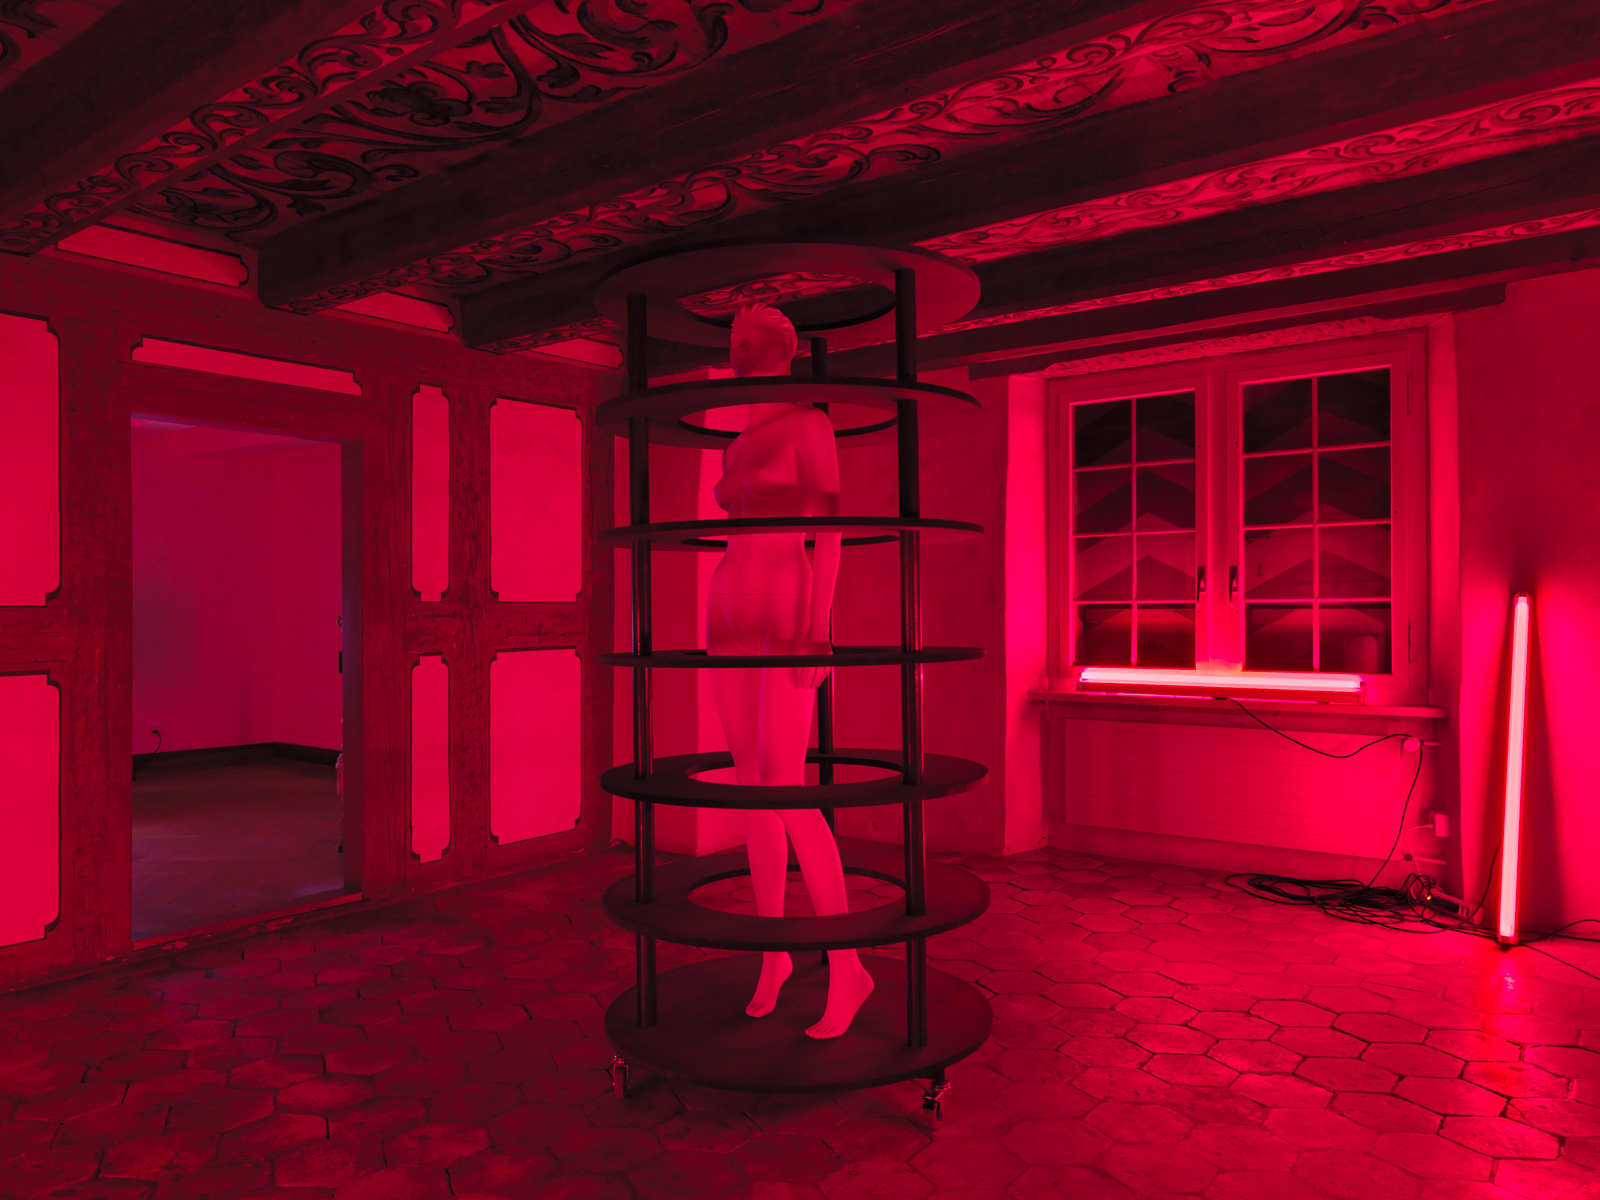 Heimo Zobernig / "Ohne Titel (In Red)", exhibition view, Kunsthalle Zürich / 2011